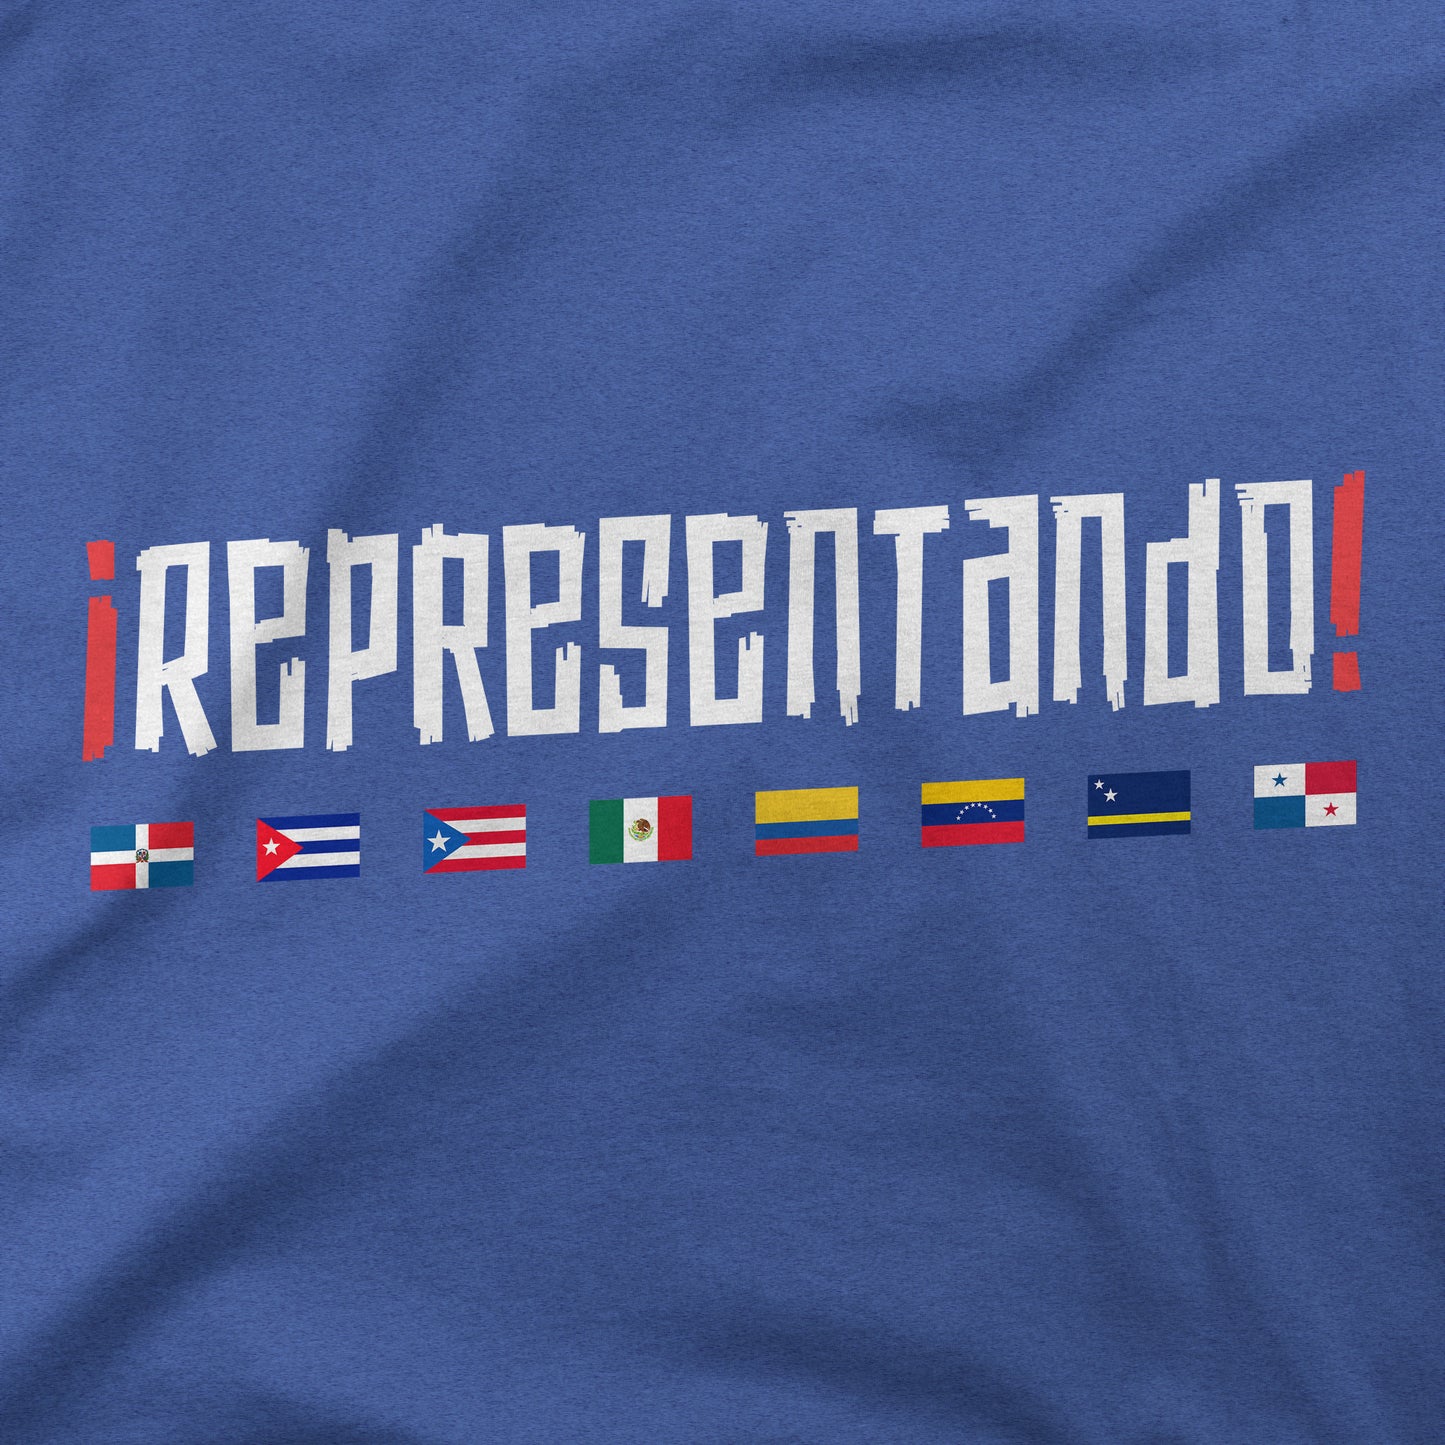 ¡REPRESENTANDO! | LAD | T-Shirt